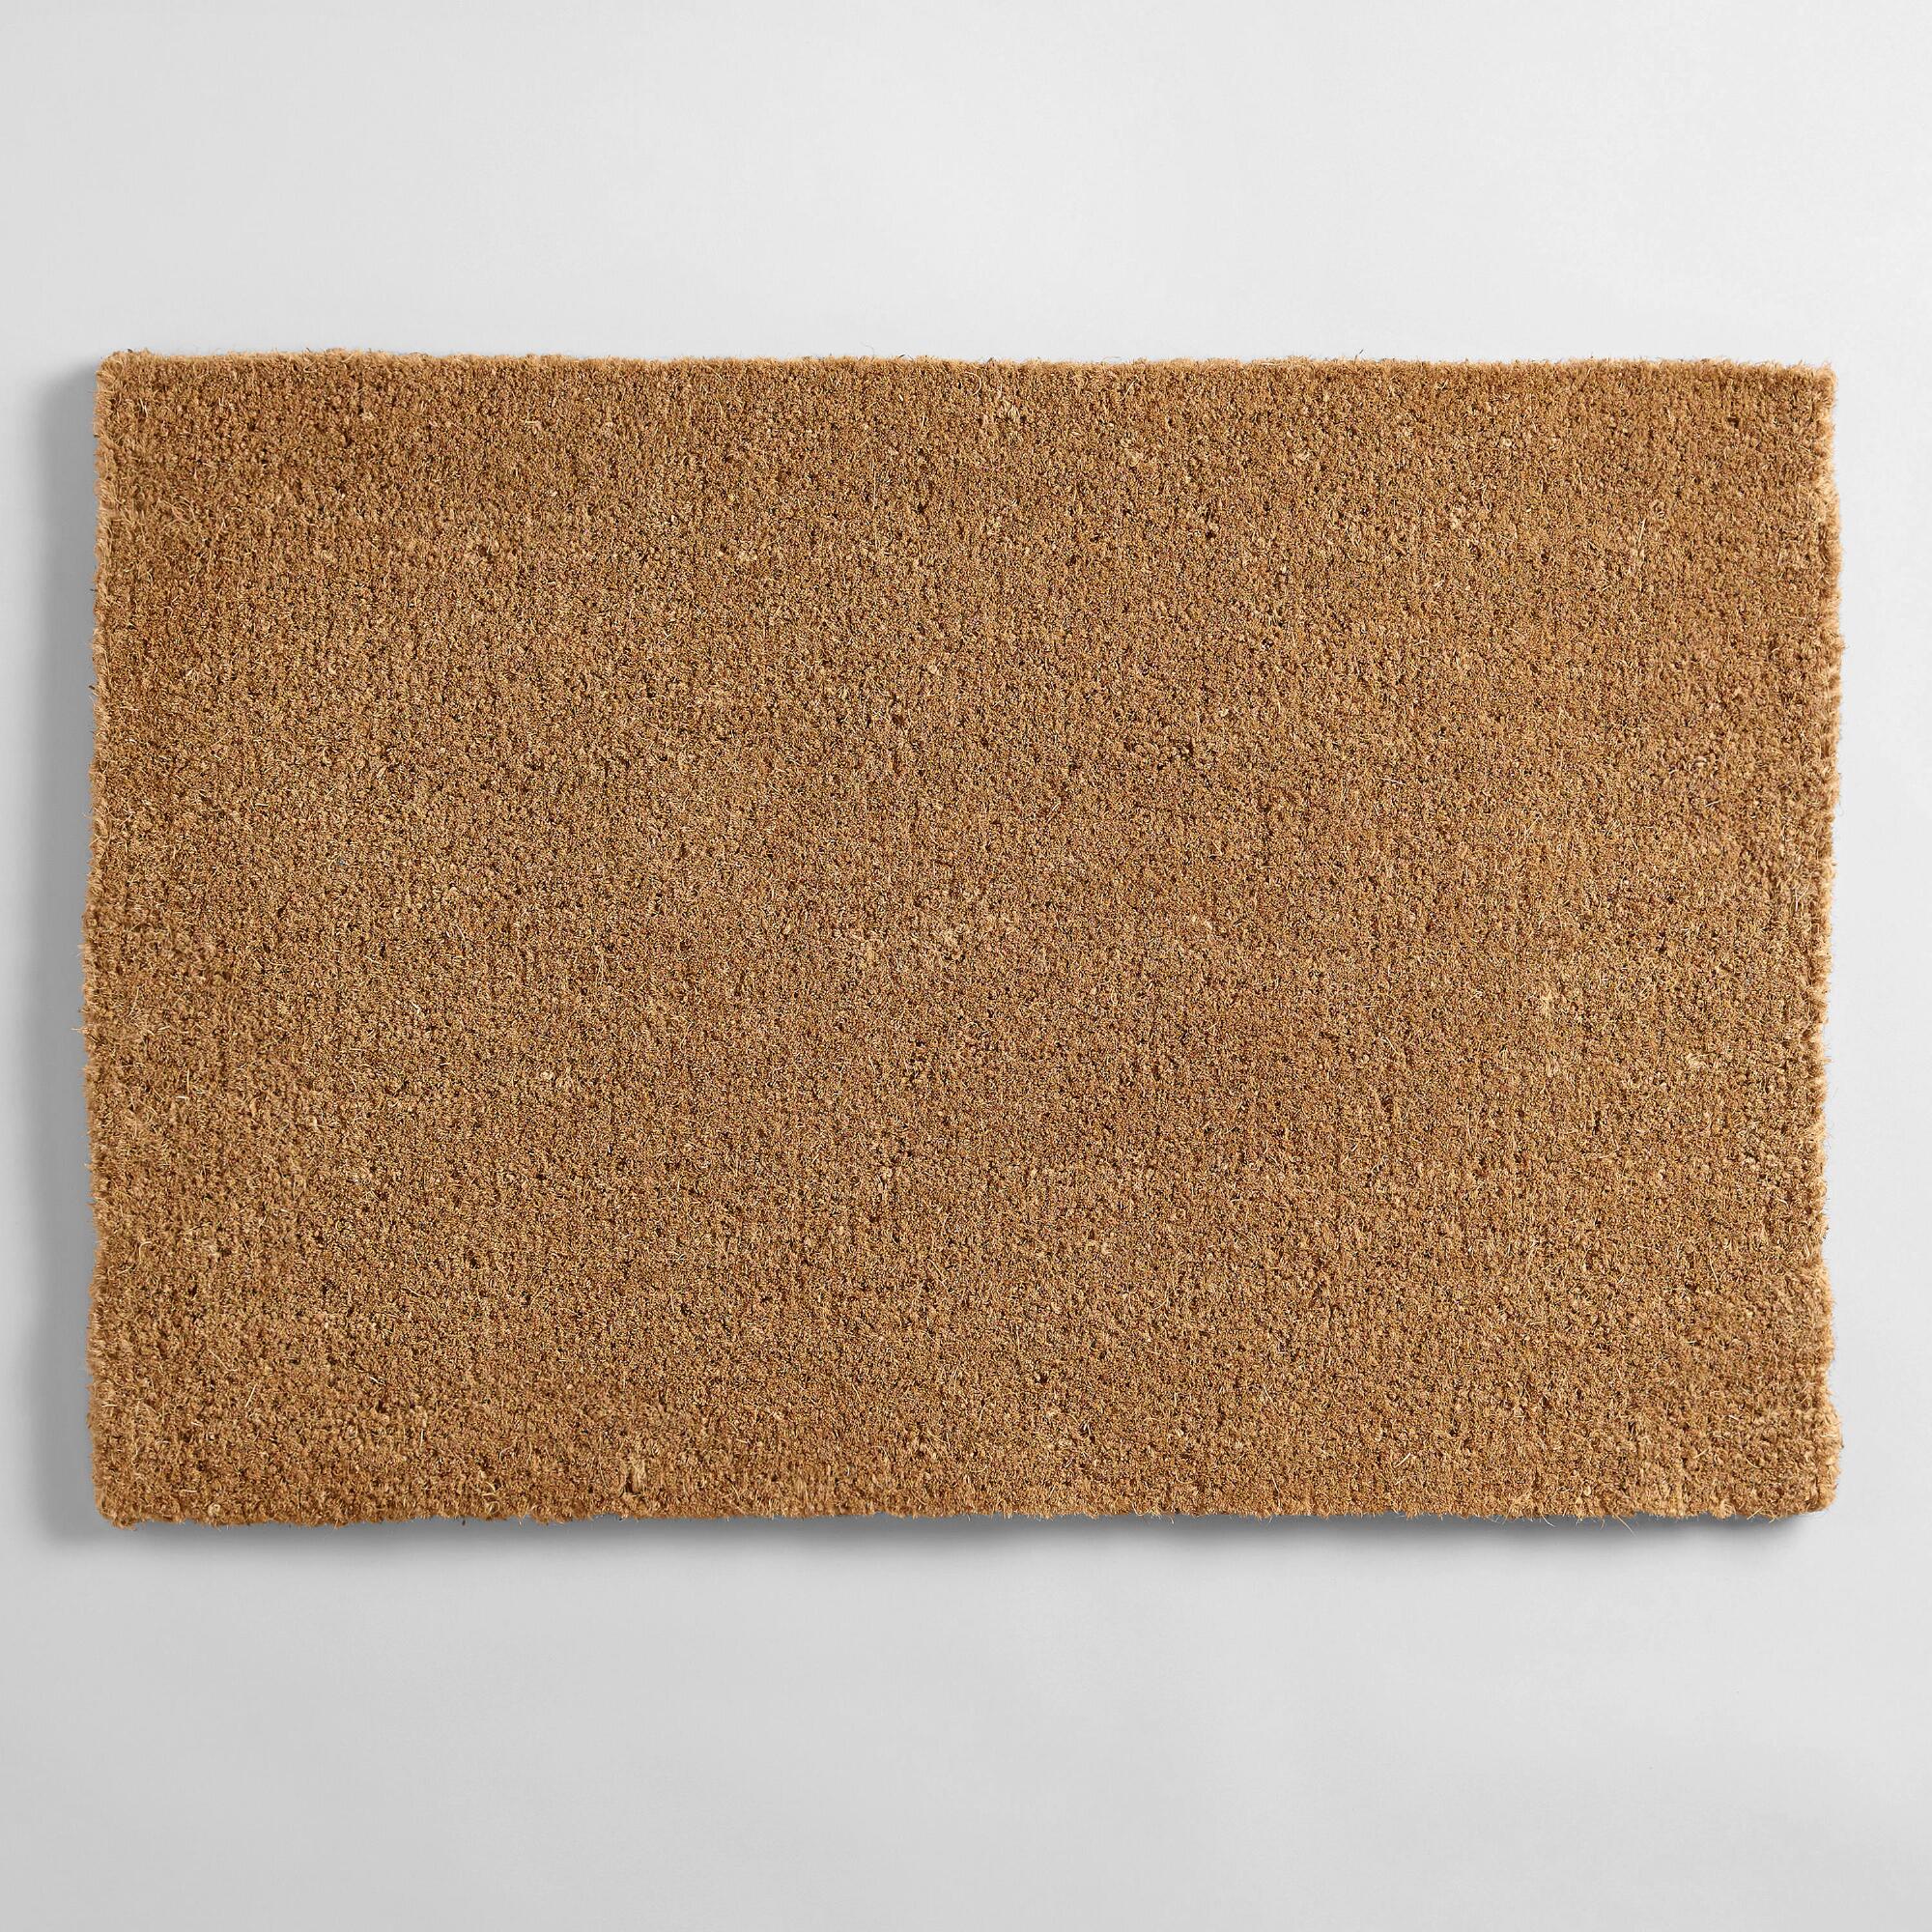 Coir Basic Doormat: Brown - Natural Fiber by World Market